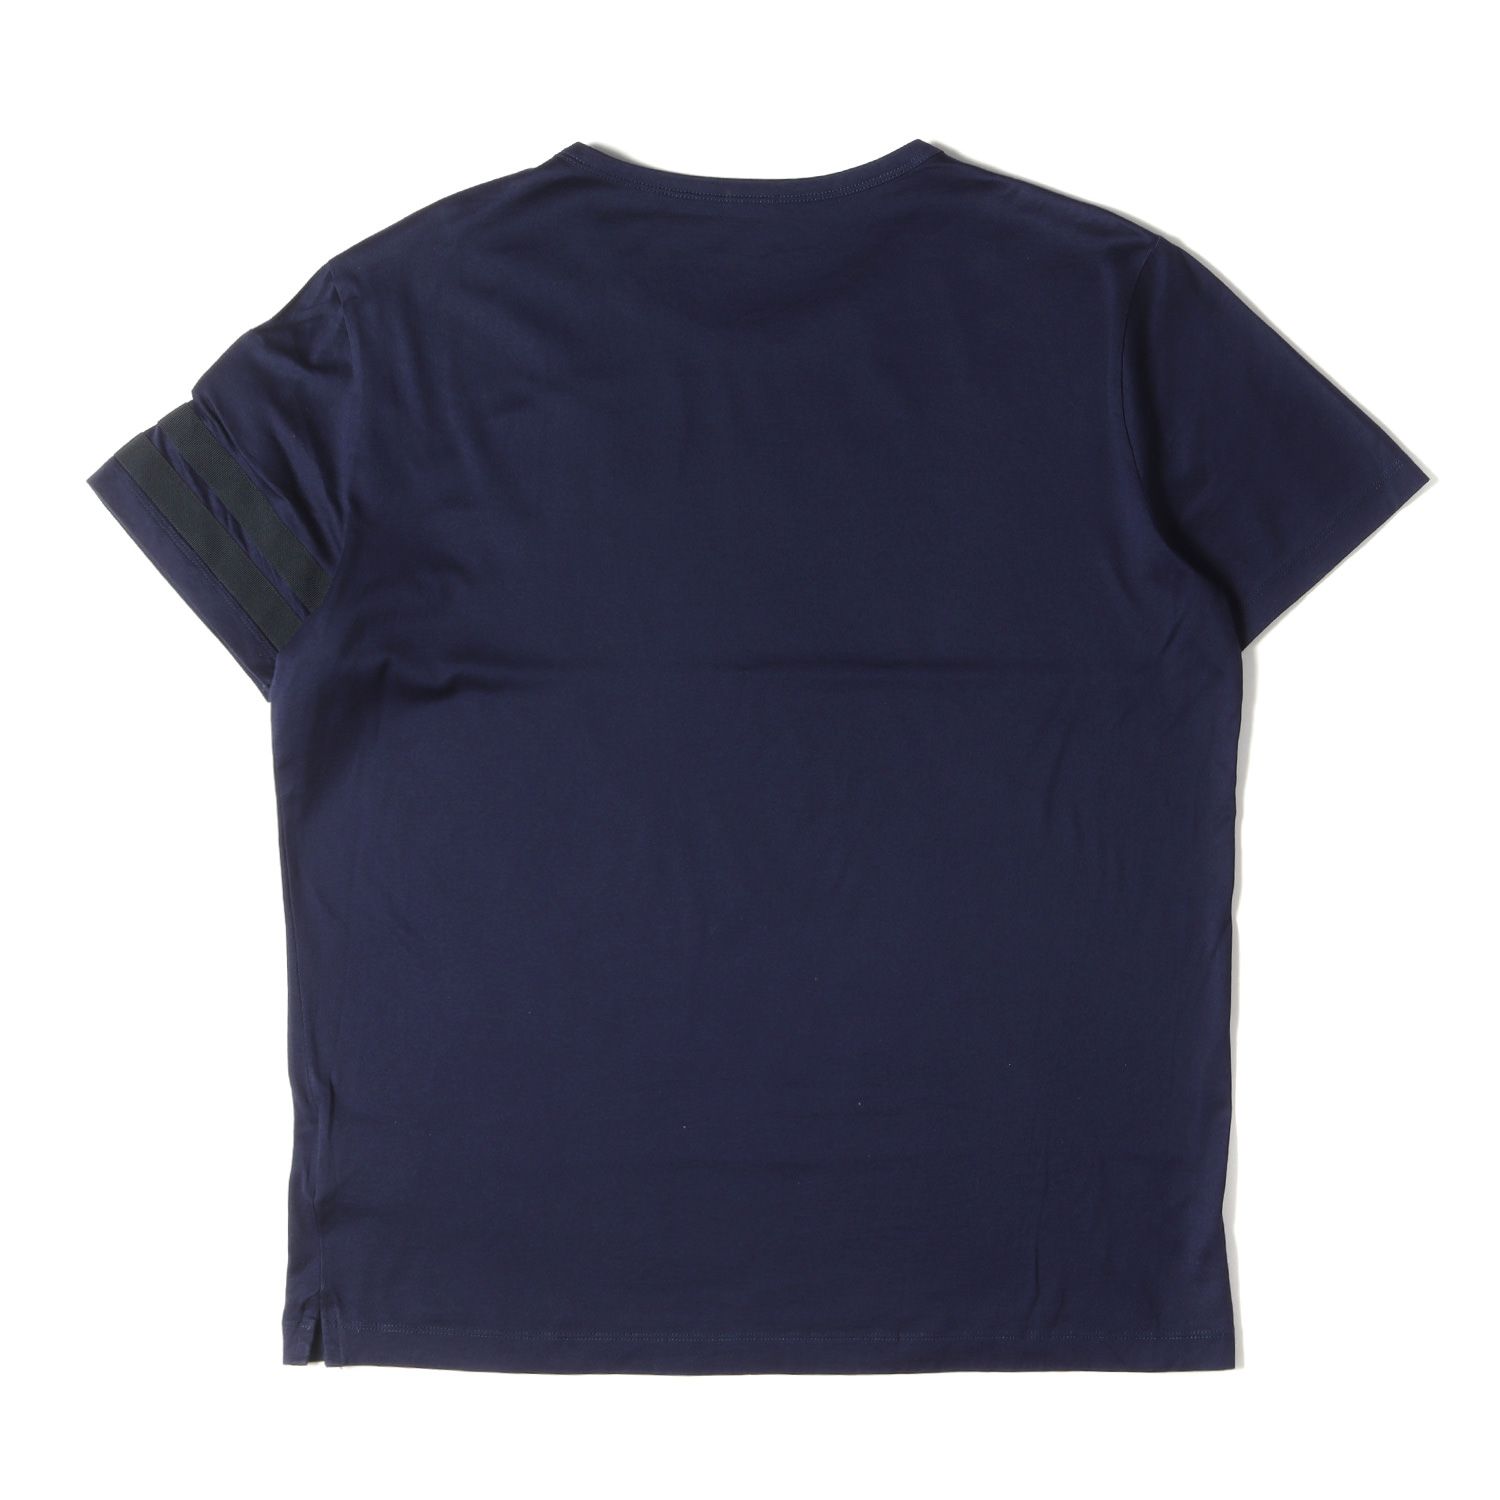 MONCLER モンクレール Tシャツ サイズ:L アームライン ロゴワッペン クルーネック 半袖 Tシャツ B10918008500 ネイビー 紺  カットソー トップス ブランド シンプル プレーン 無地